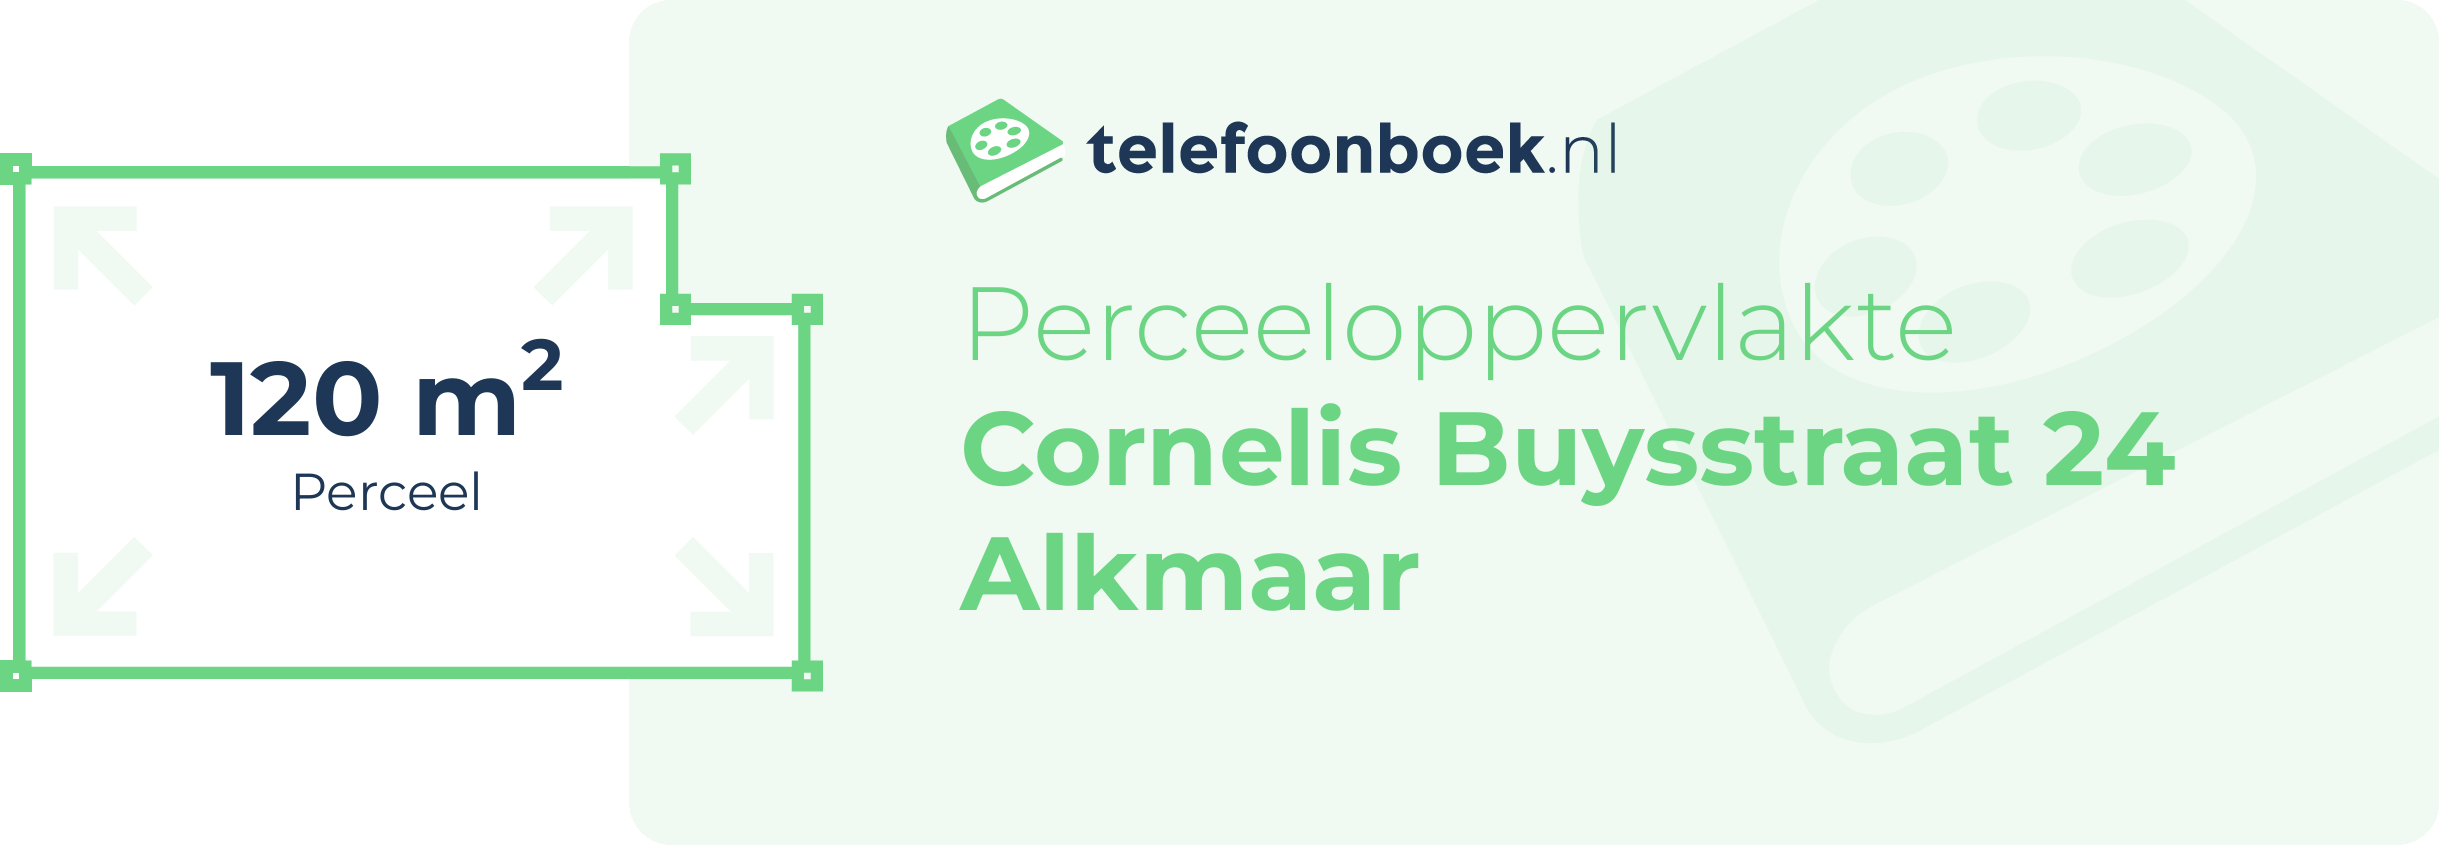 Perceeloppervlakte Cornelis Buysstraat 24 Alkmaar